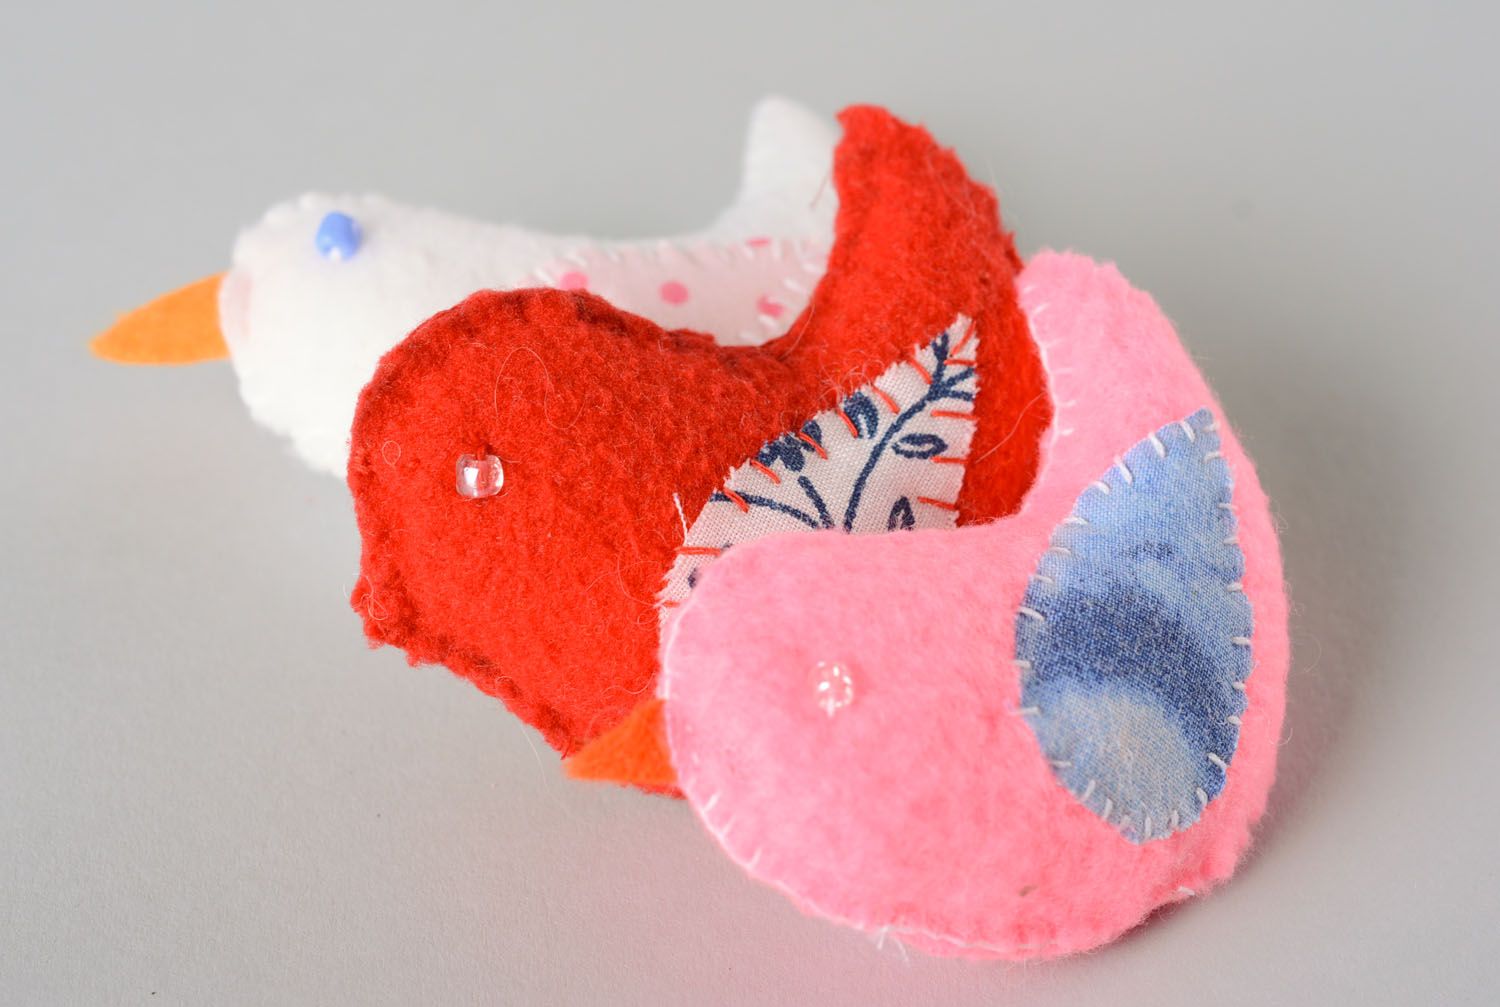 Ensemble des jouets oiseaux en tissu faits main aromatisés rose rouge et blanc photo 1